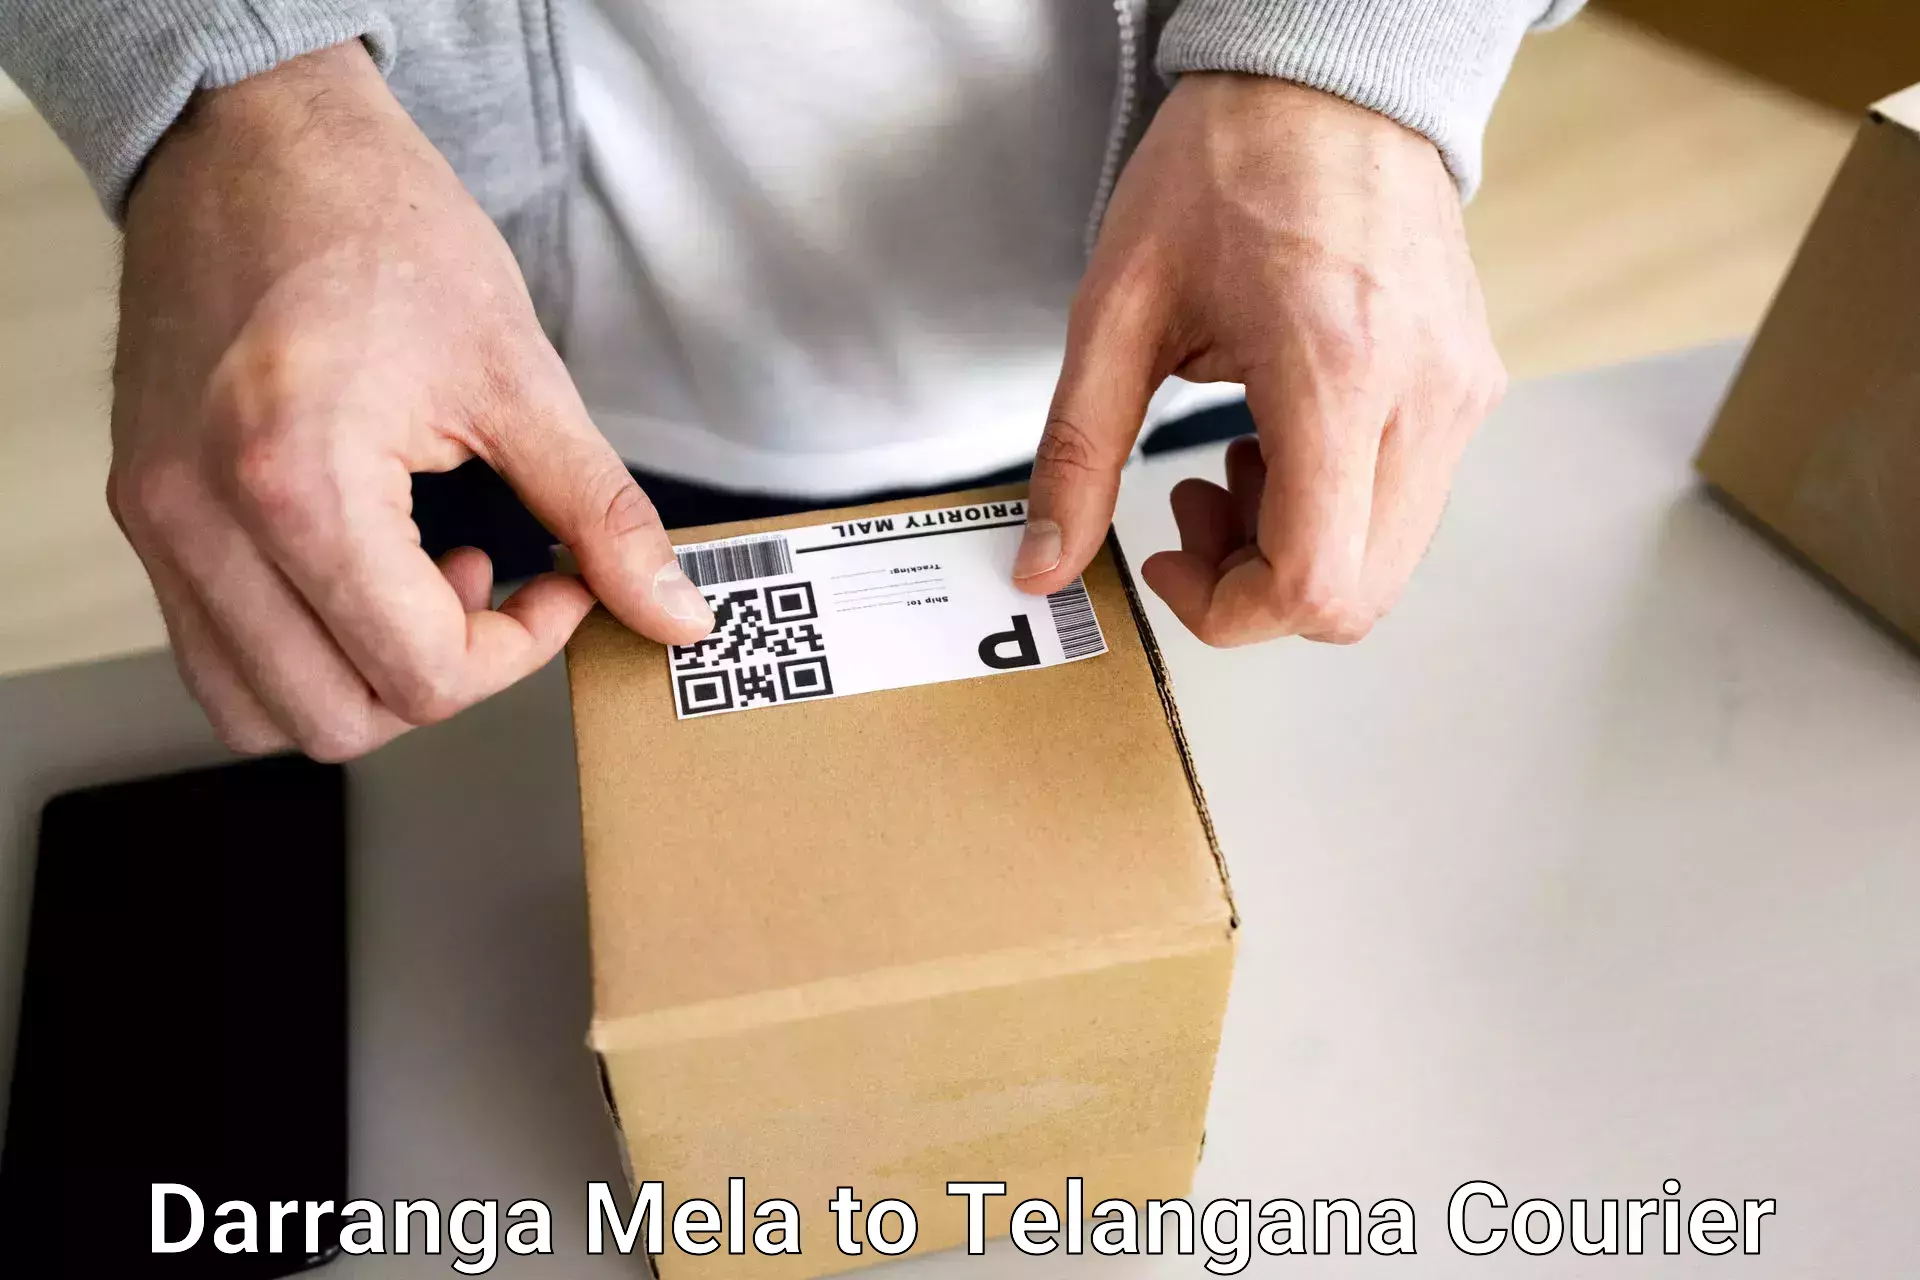 Electronic items luggage shipping Darranga Mela to Madgulapally